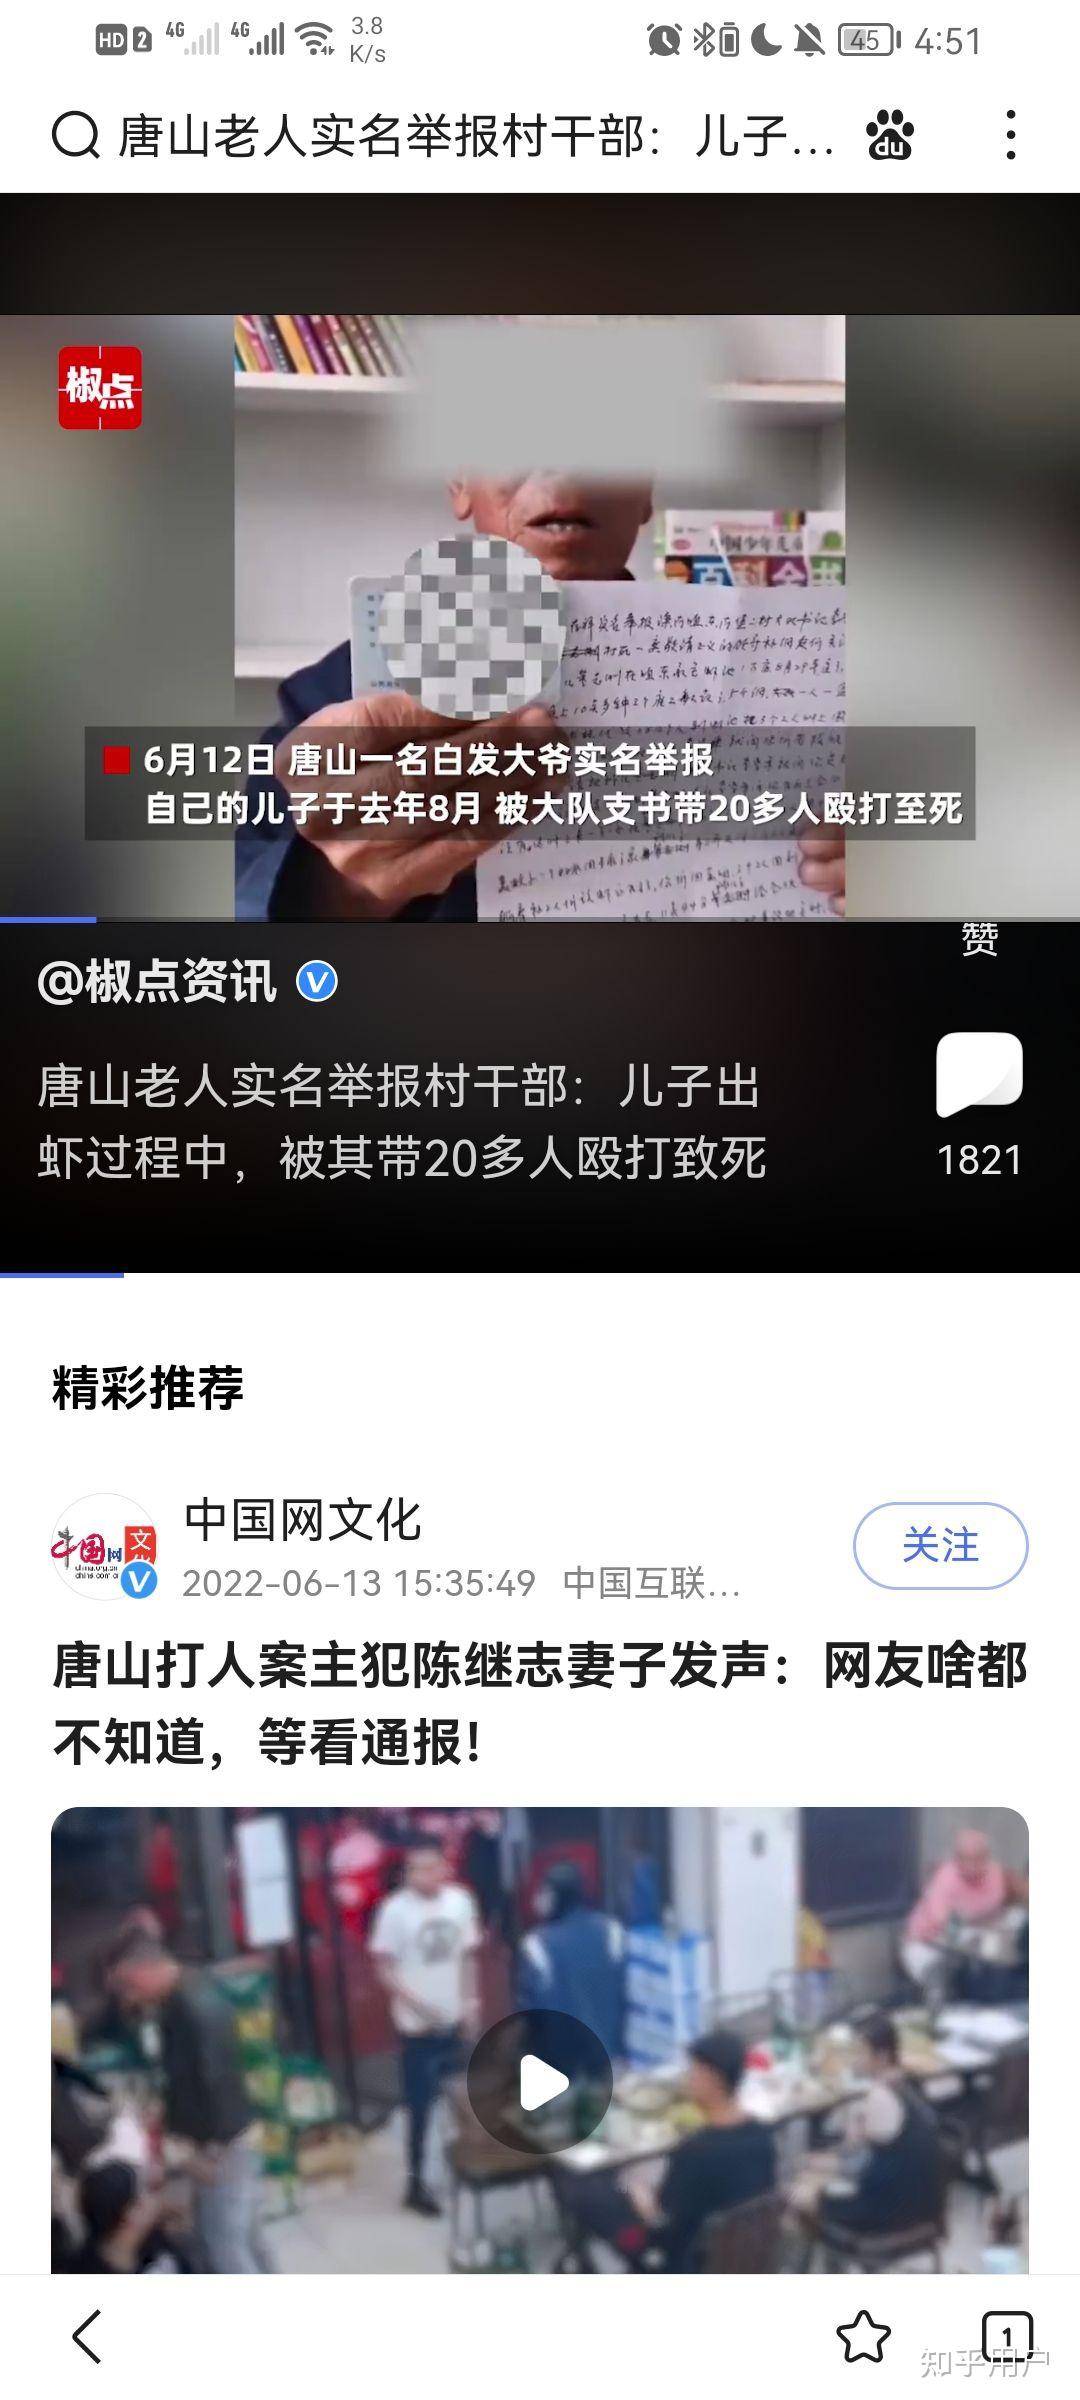 唐山再现女子被打 8人被拘1人仍在逃 – 博讯新闻网